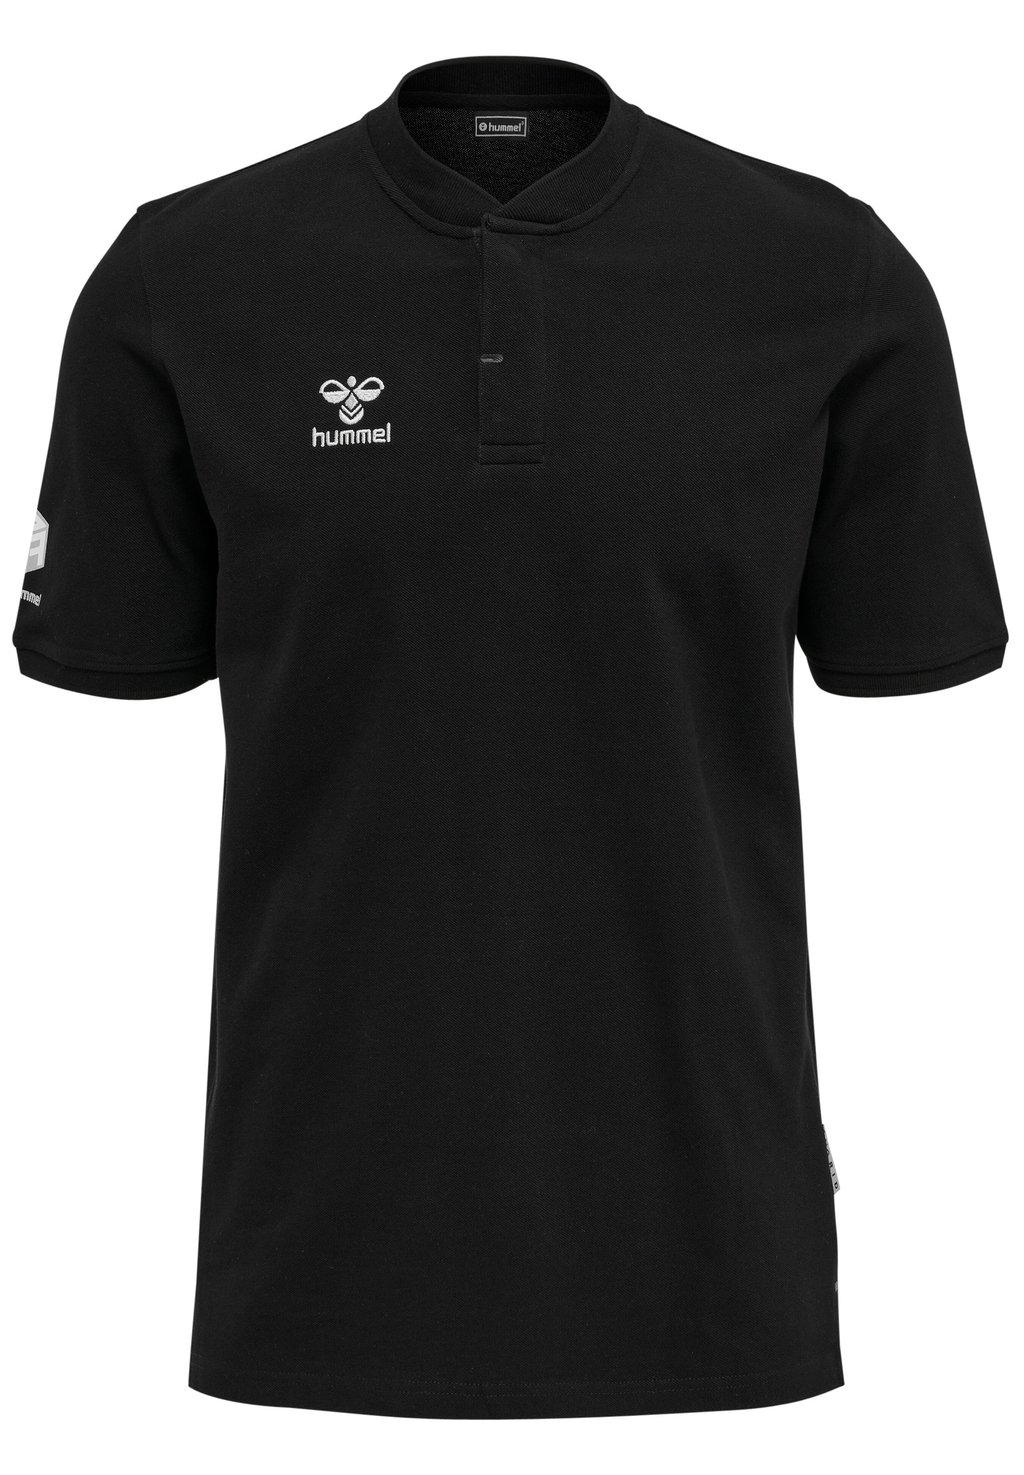 Базовая футболка Hummel, черный базовая футболка essential ss hummel черный